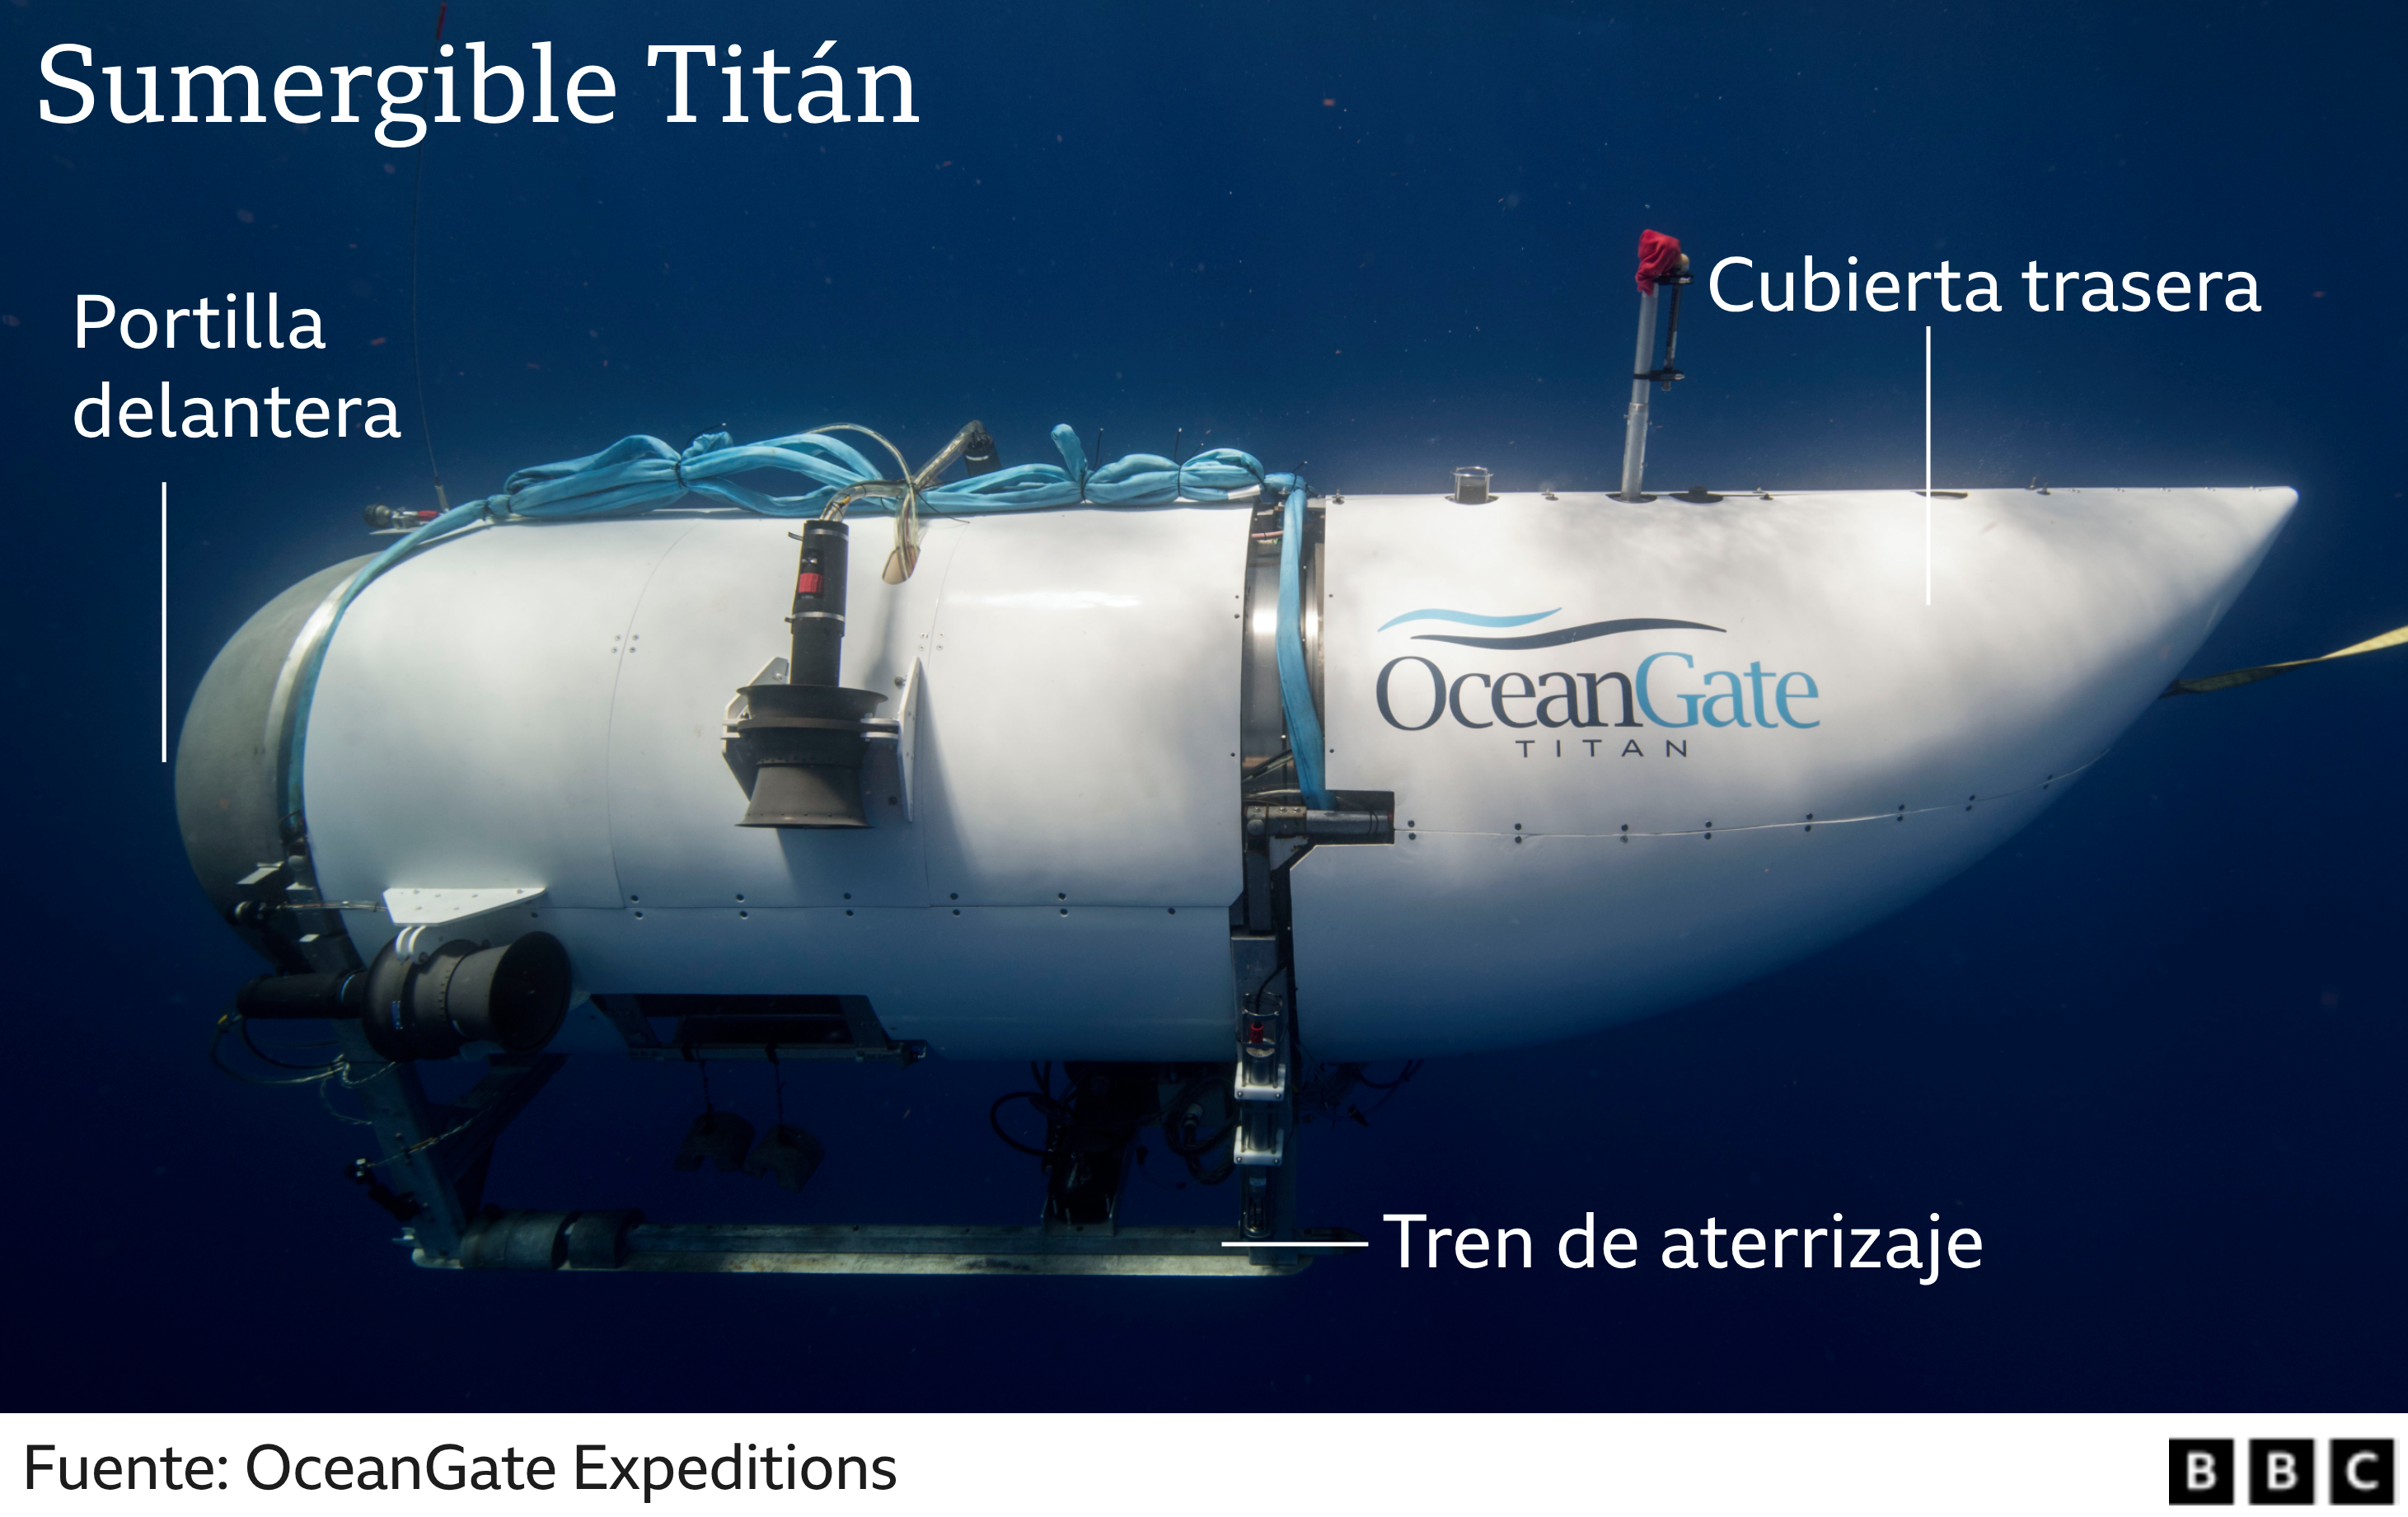 El Titán fue diseñado para llevar a cinco personas a unas profundidades de 4.000 metros bajo el mar.